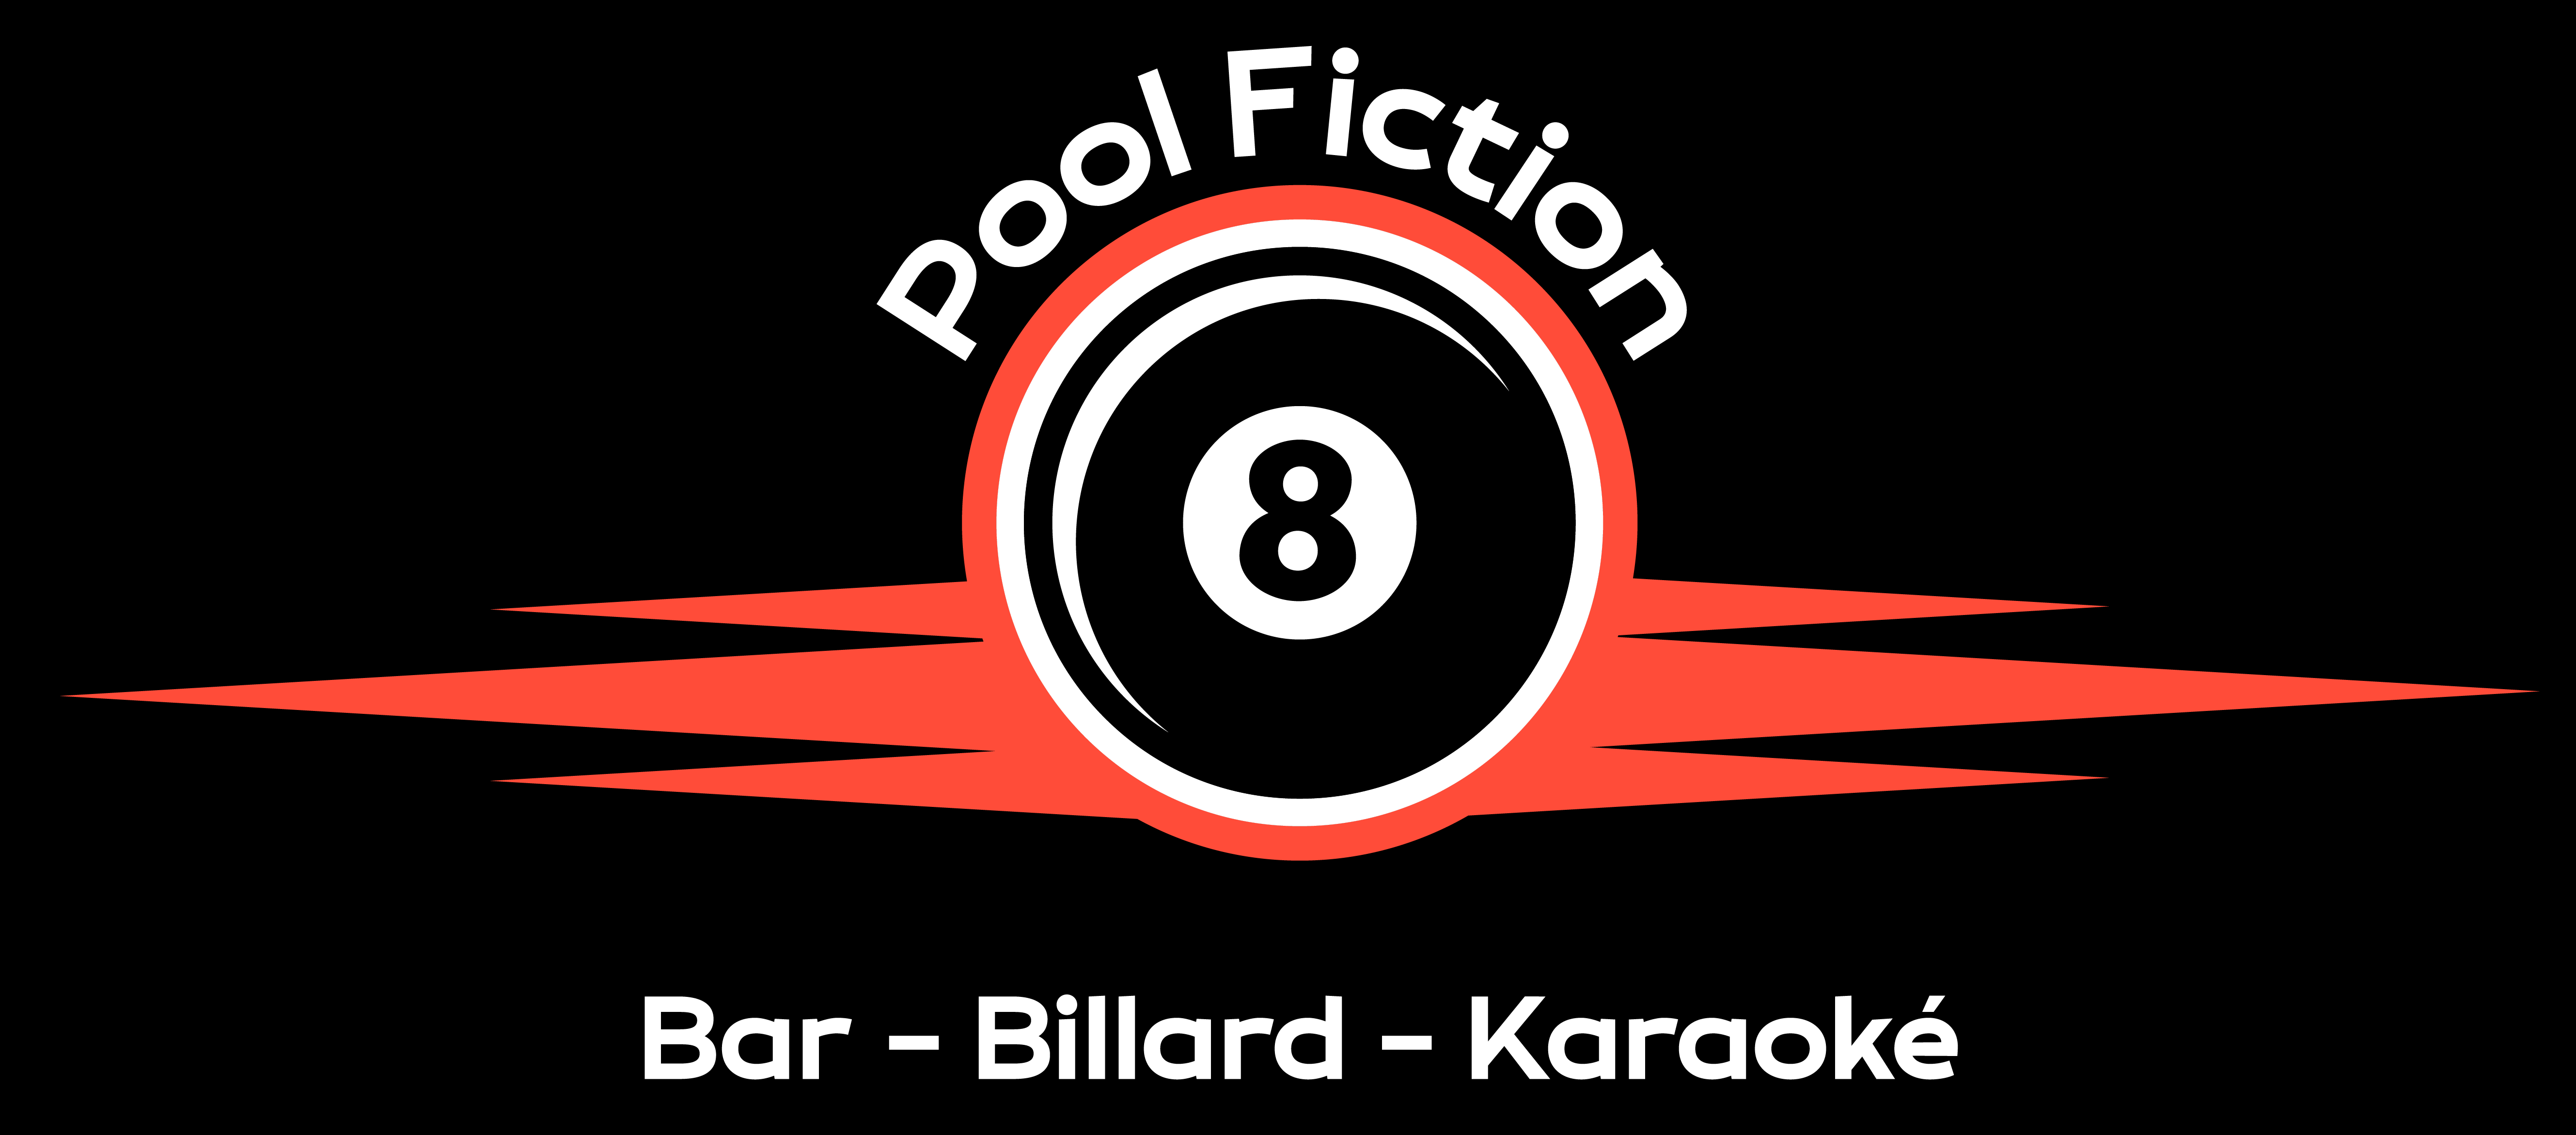 Pool Fiction